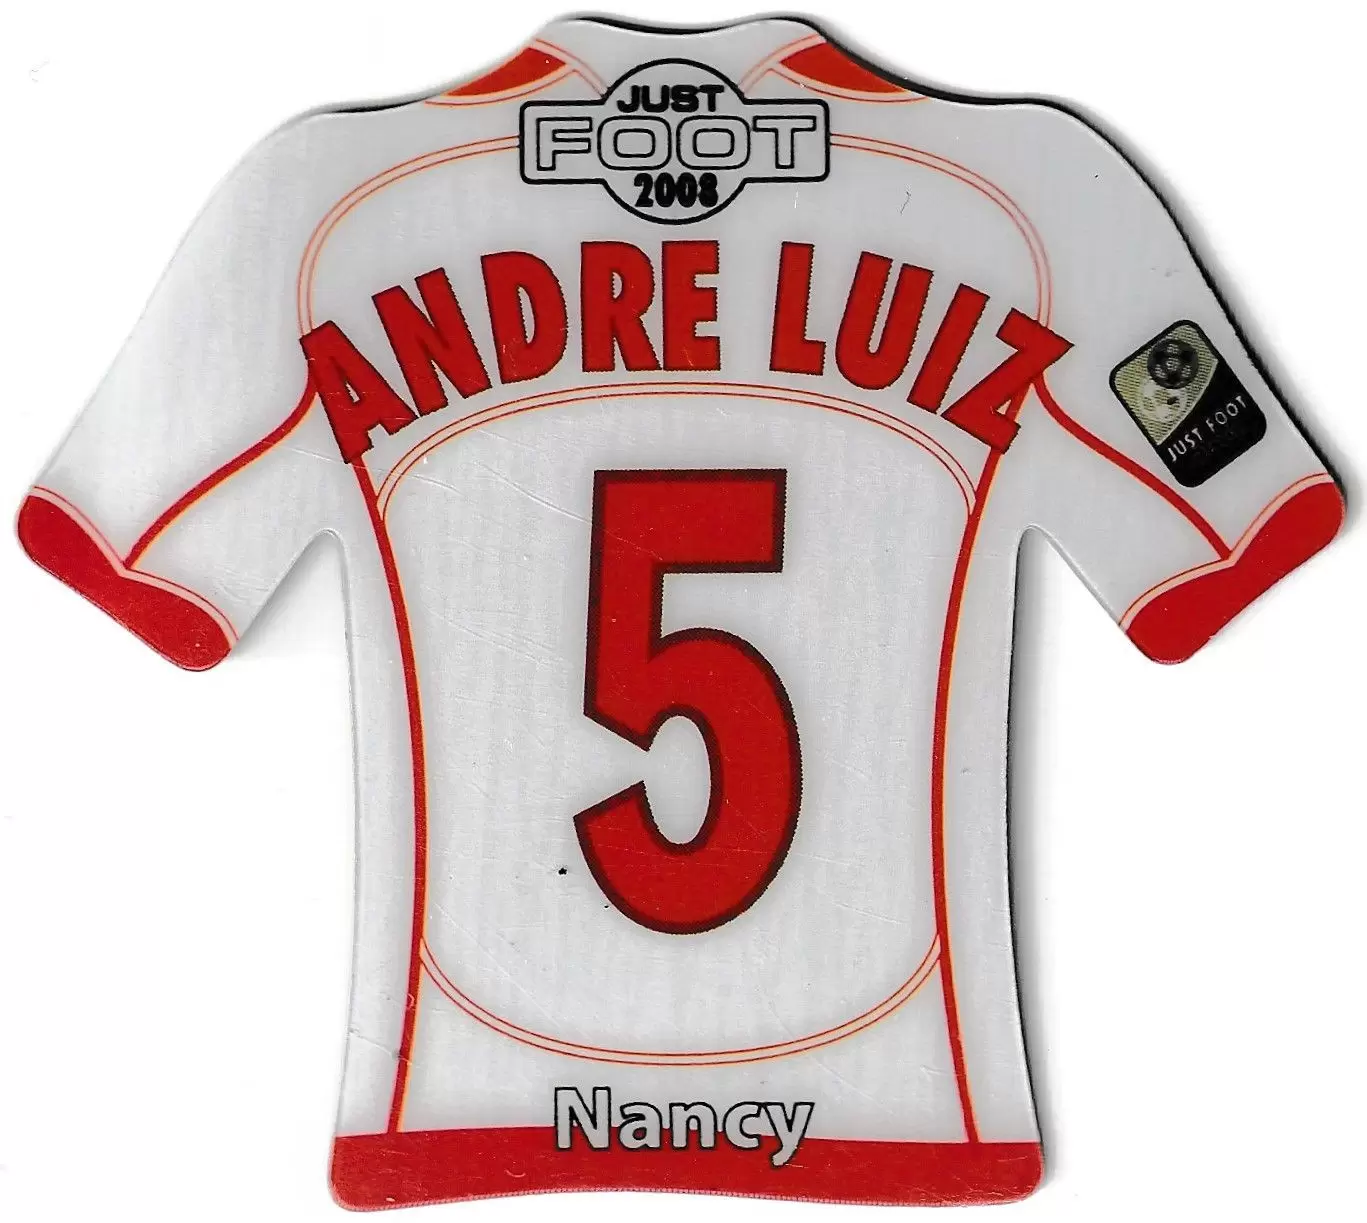 Just Foot 2008 - Nancy 5 - Andre Luiz